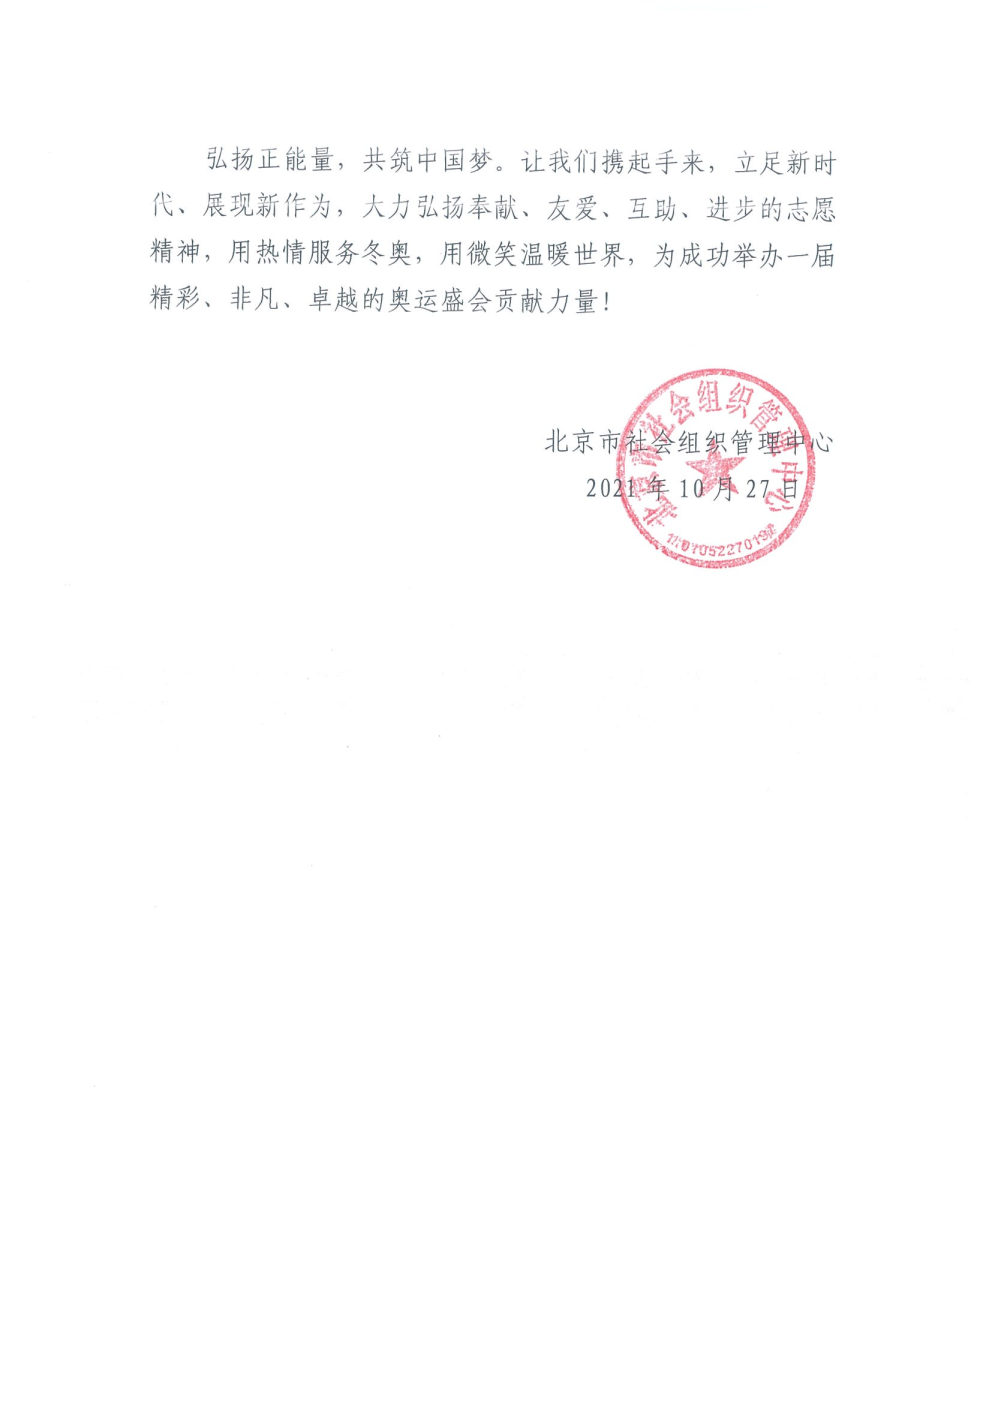 北京市社会组织助力北京冬奥会倡议书_Page3.png